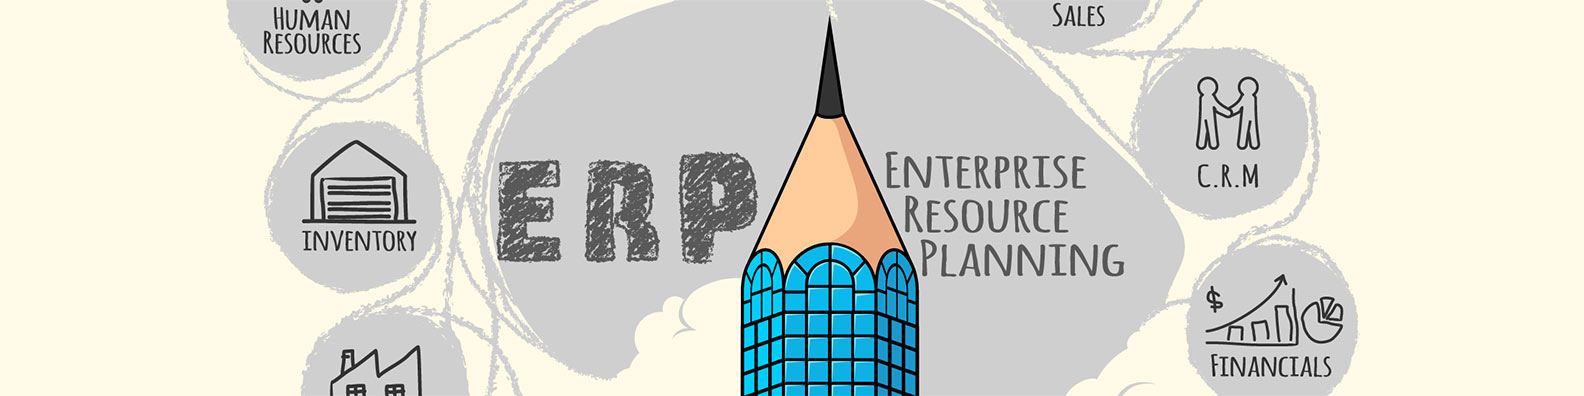 Enterprise Resource Planning ERP LinkedIn Background Image